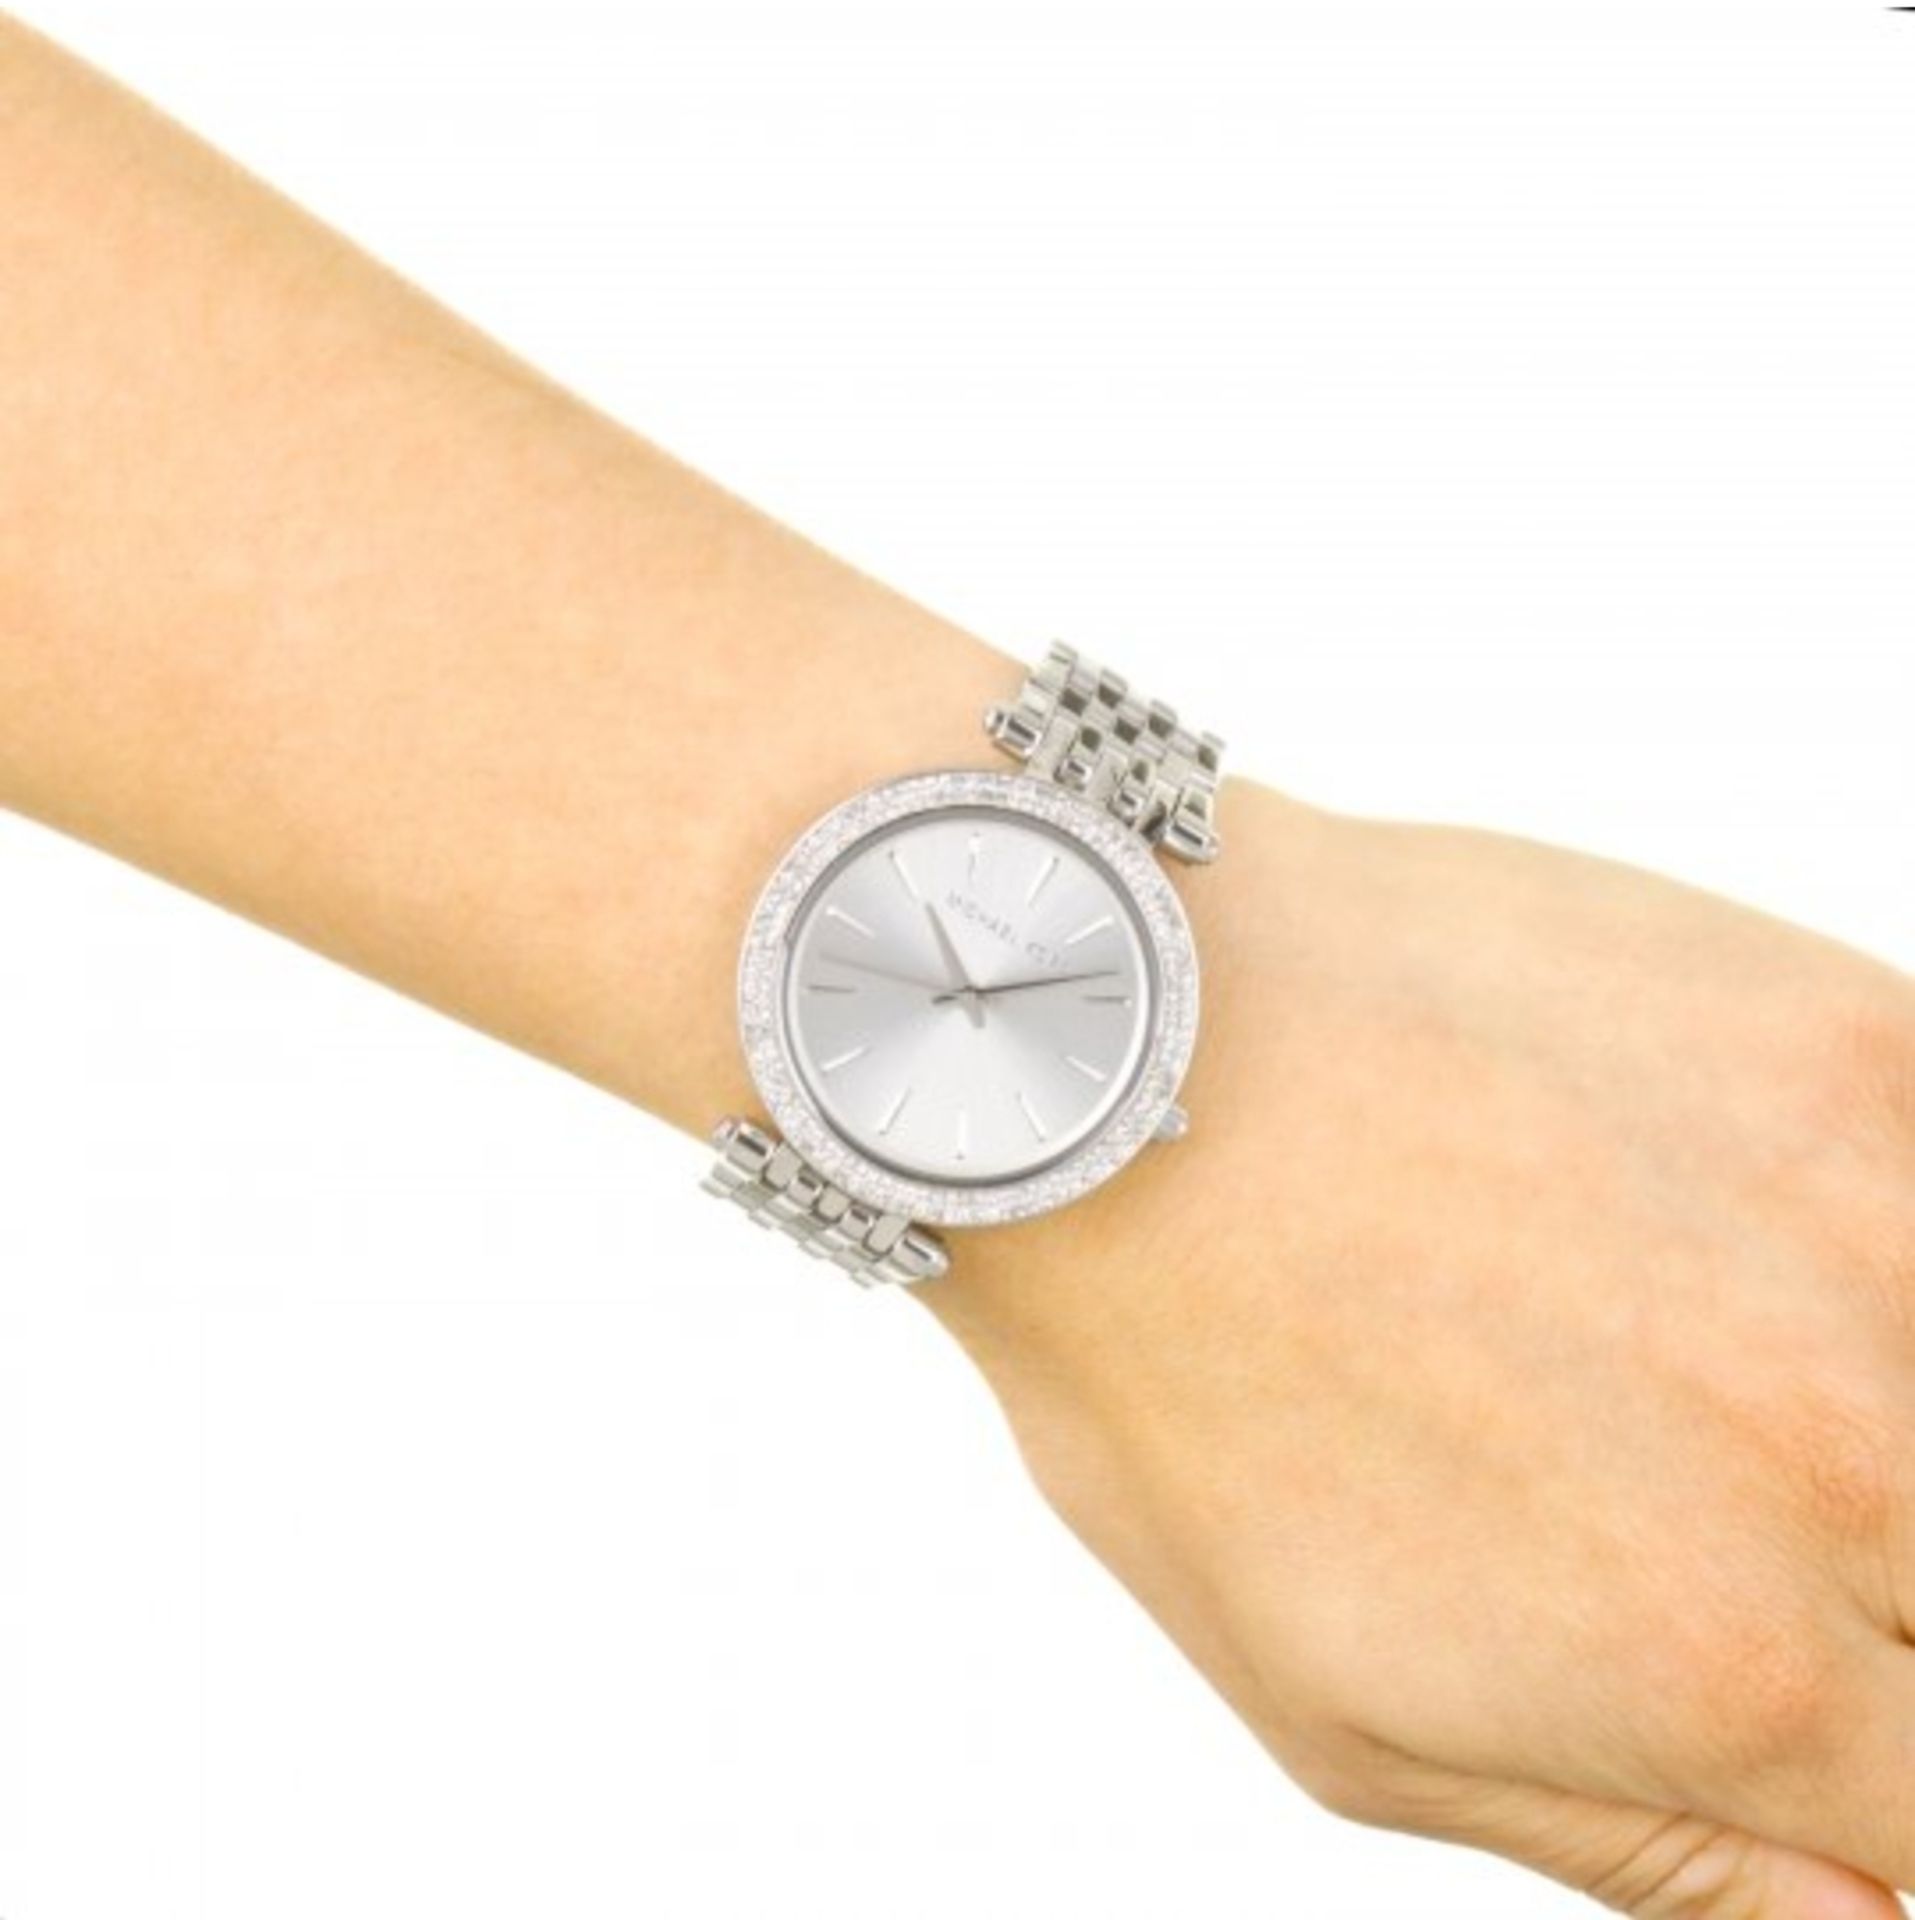 Michael Kors MK3190 Darci Silver Ladies Watch - Image 3 of 8